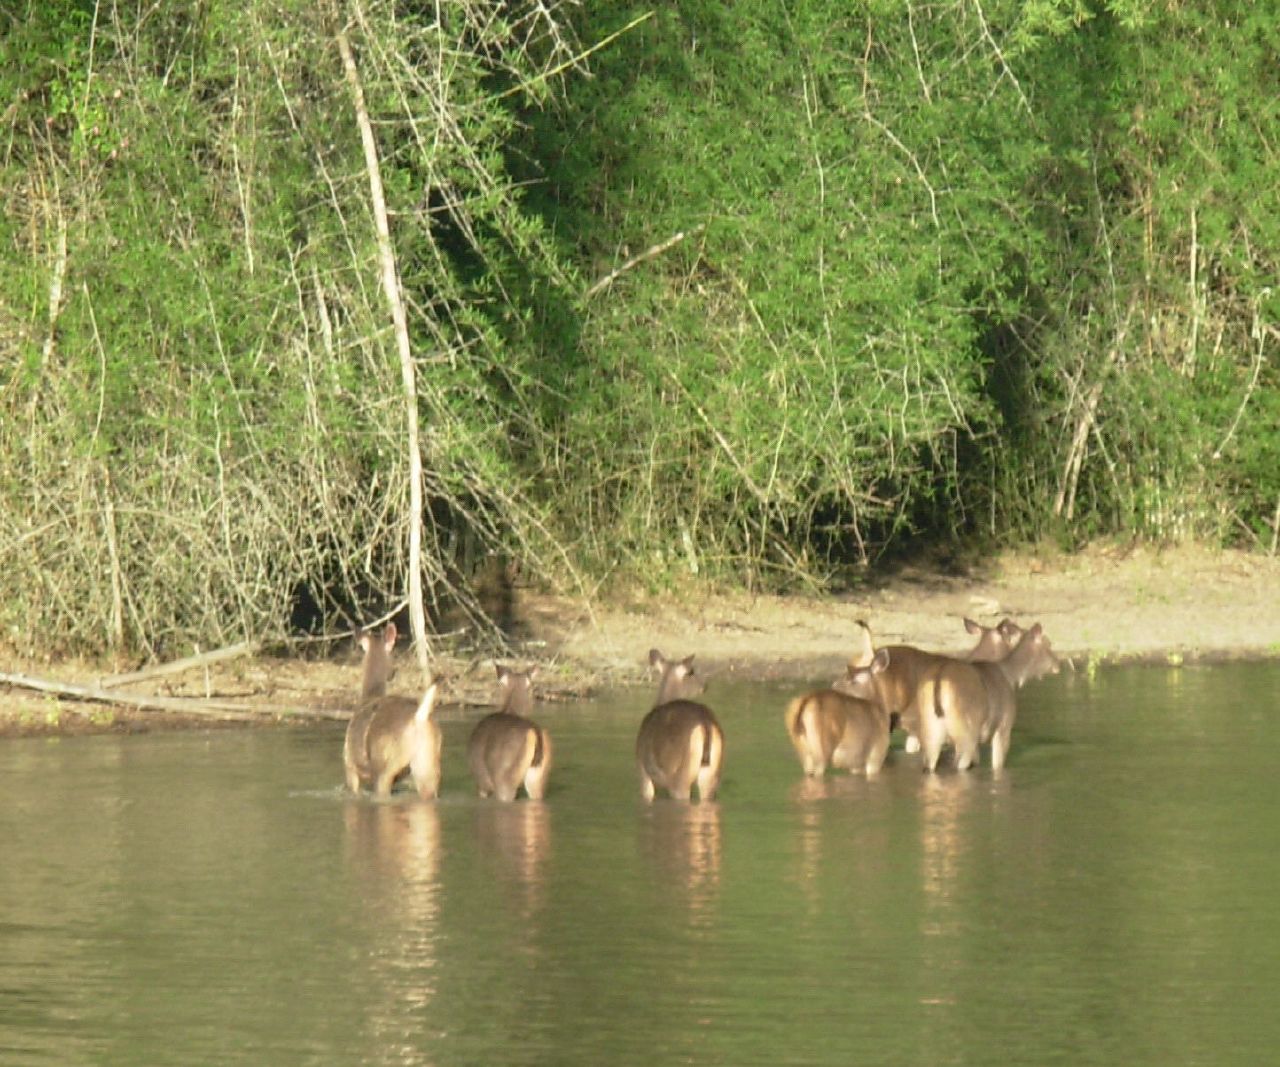 a herd of deer walking in shallow water